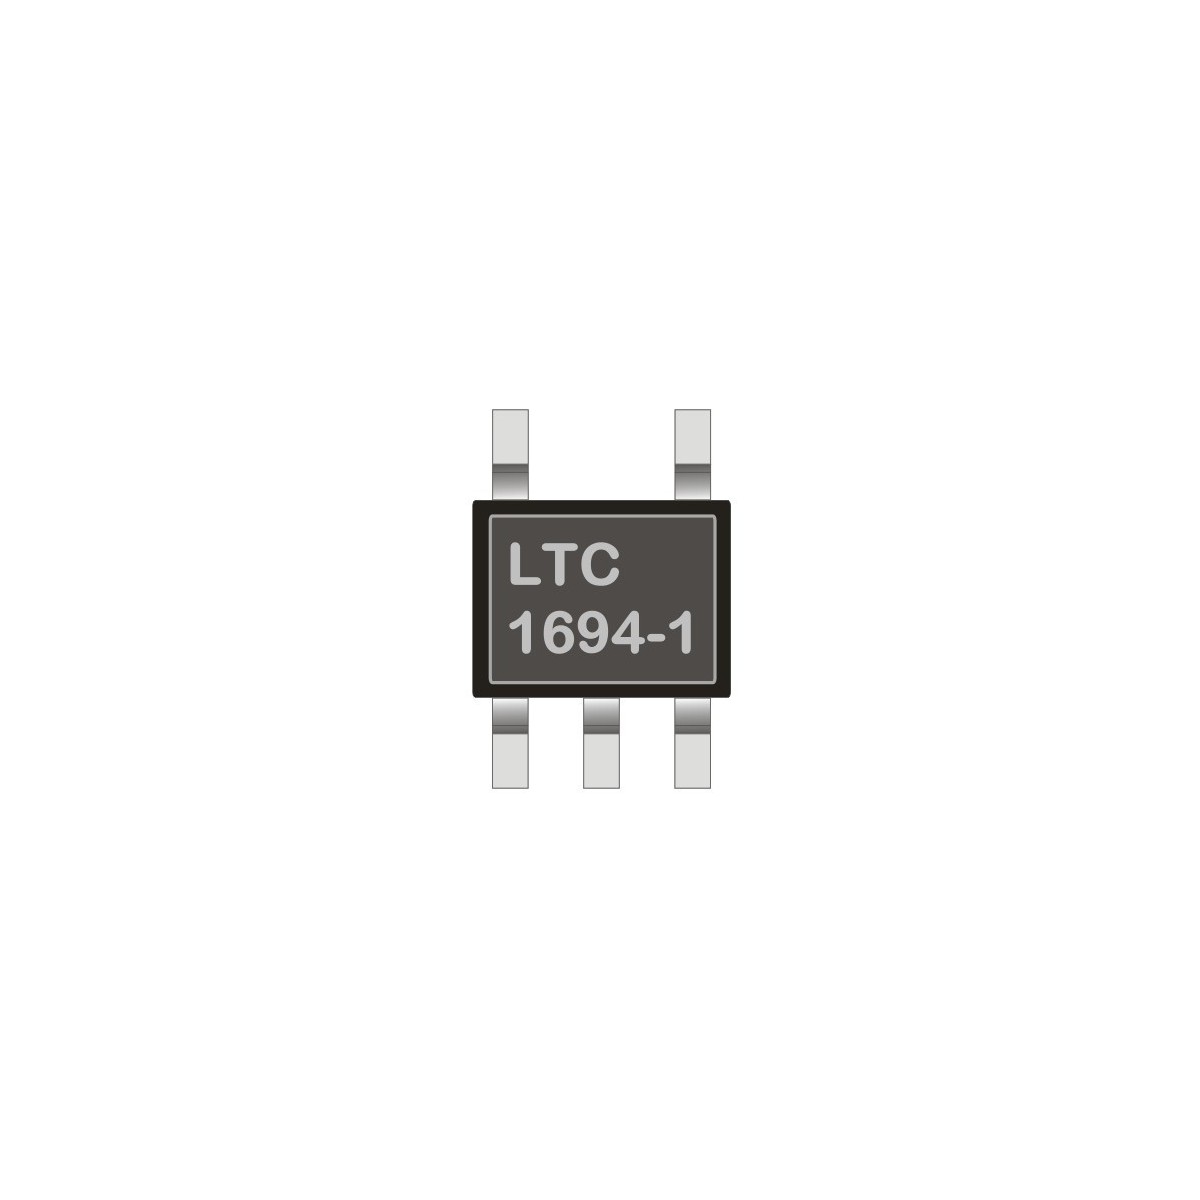 I2C Accelerator LTC1694-1